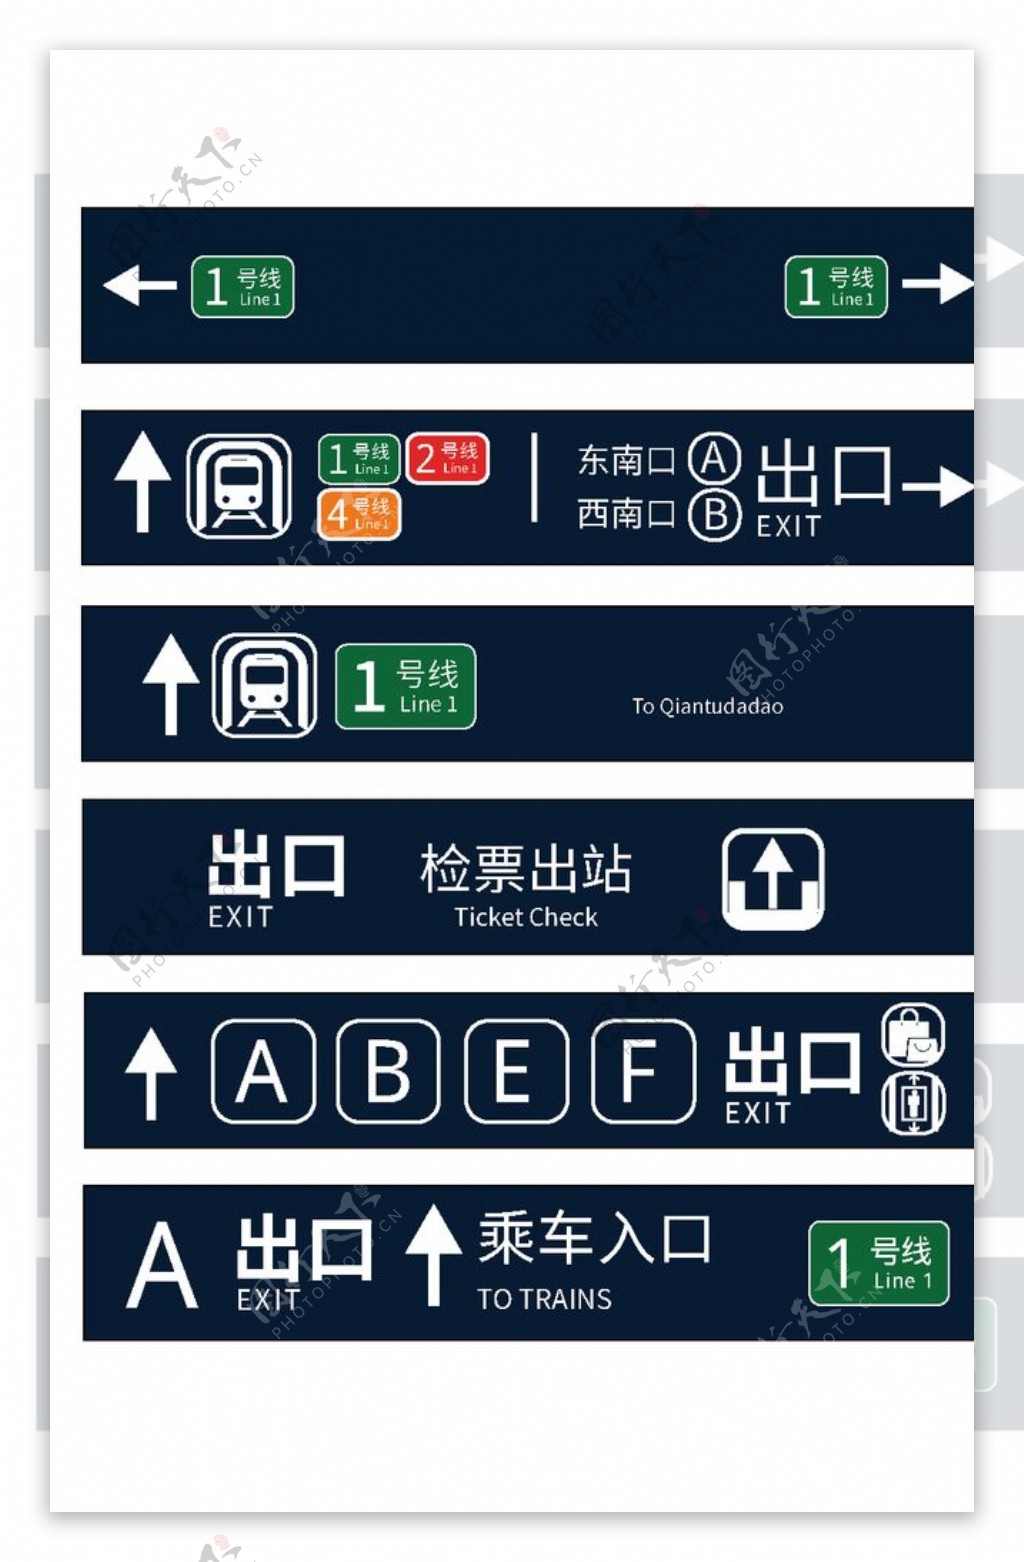 香港地铁 - 地铁线路图